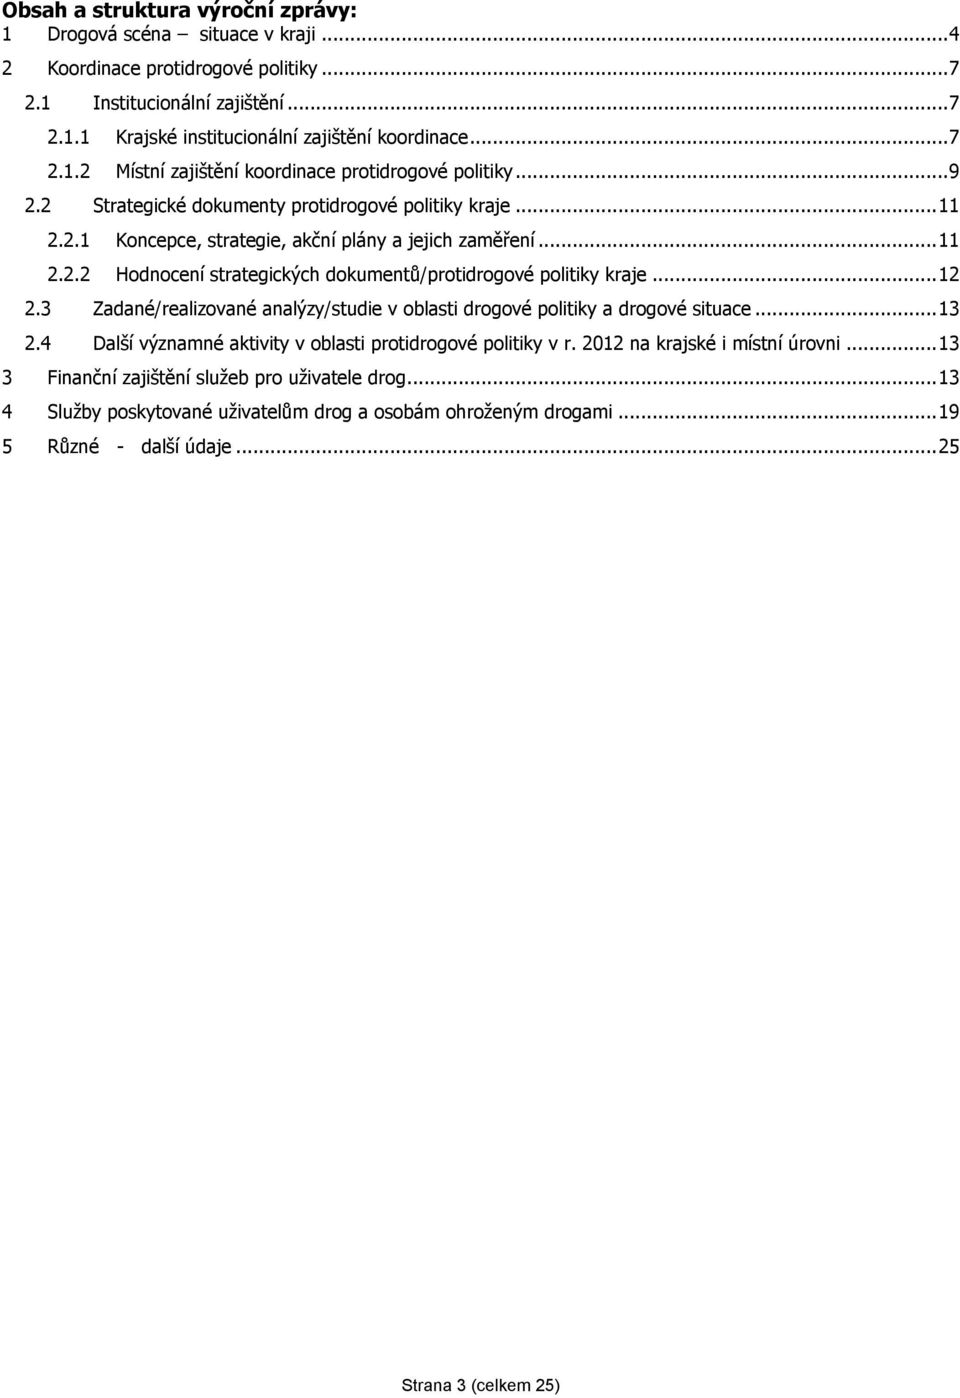 3 Zadané/realizované analýzy/studie v oblasti drogové politiky a drogové situace...13 2.4 Další významné aktivity v oblasti protidrogové politiky v r. 2012 na krajské i místní úrovni.